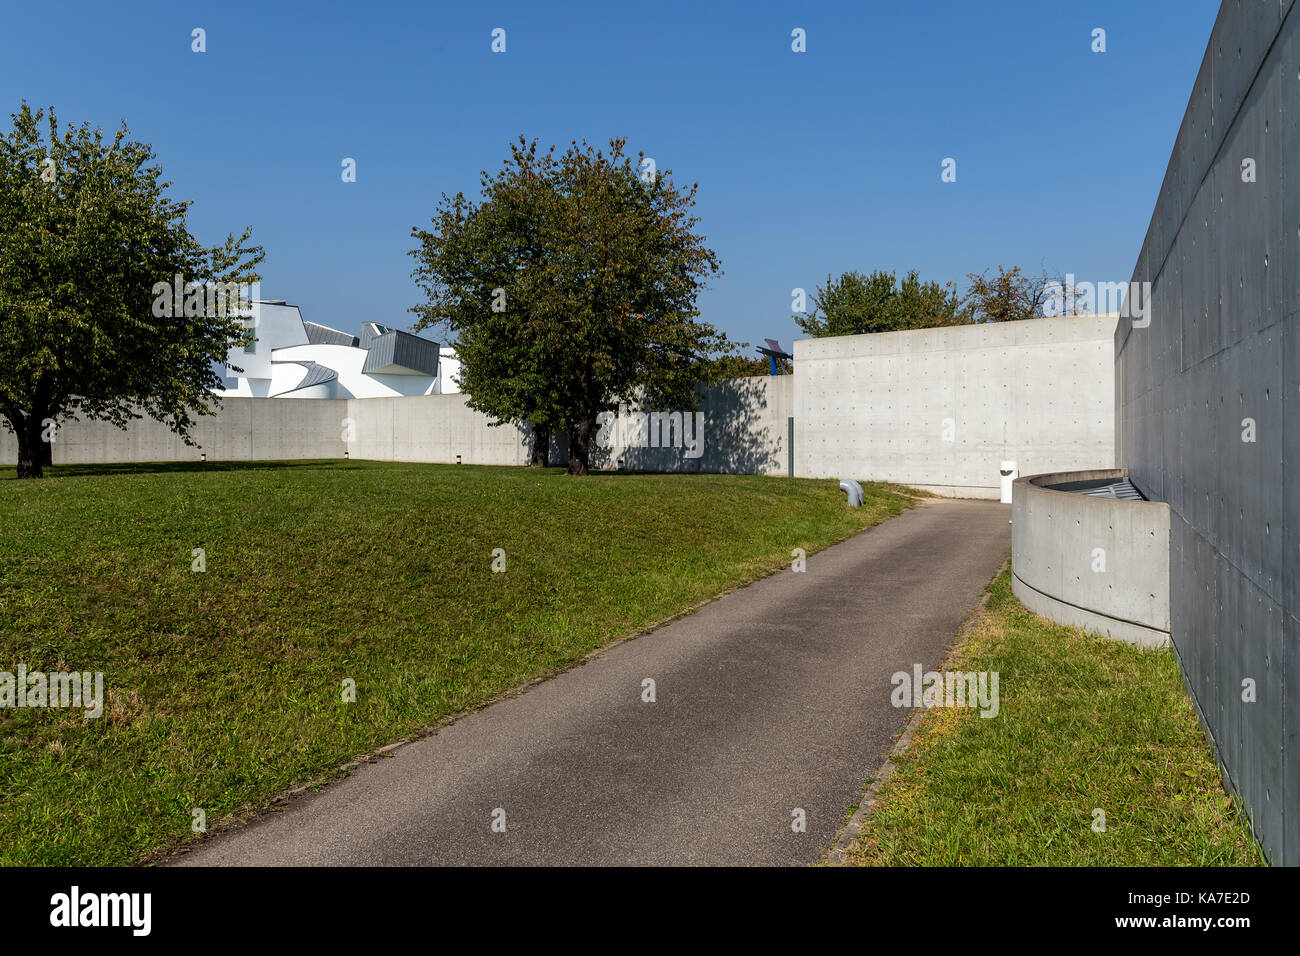 Konferenz-pavillon von Tadao Ando, Vitra Campus in Weil am Rhein, Deutschland. Stockfoto